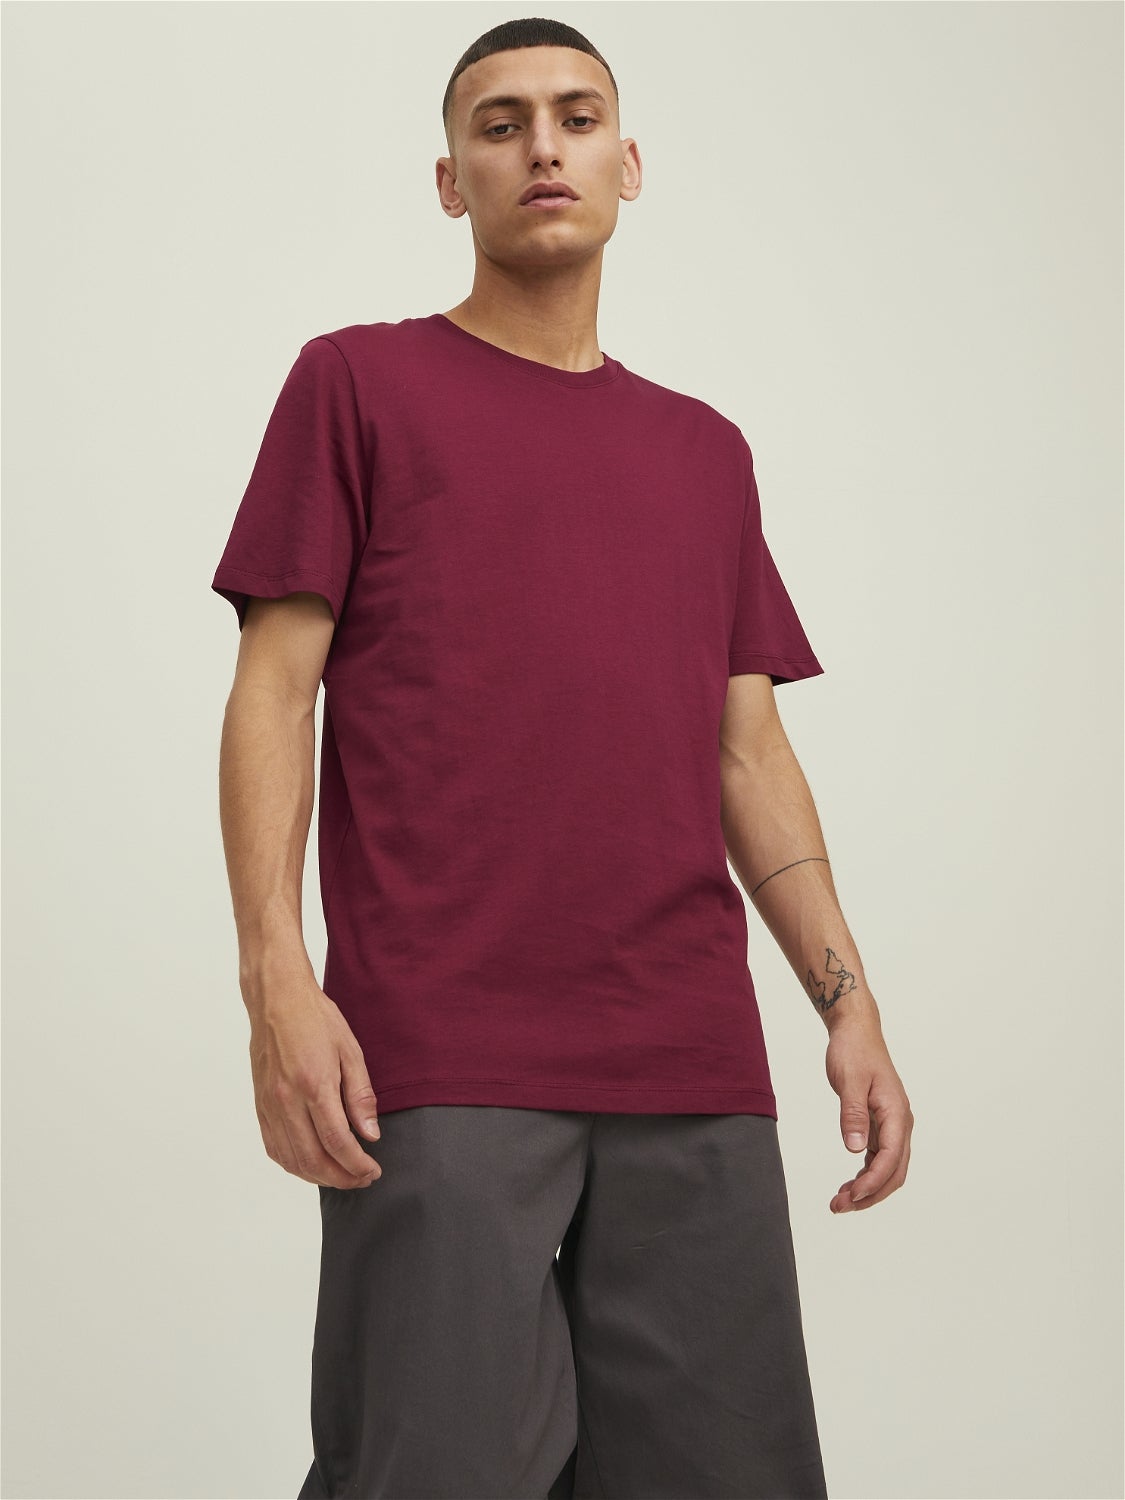 Rot L Rabatt 88 % DAMEN Hemden & T-Shirts Asymmetrisch NoName T-Shirt 